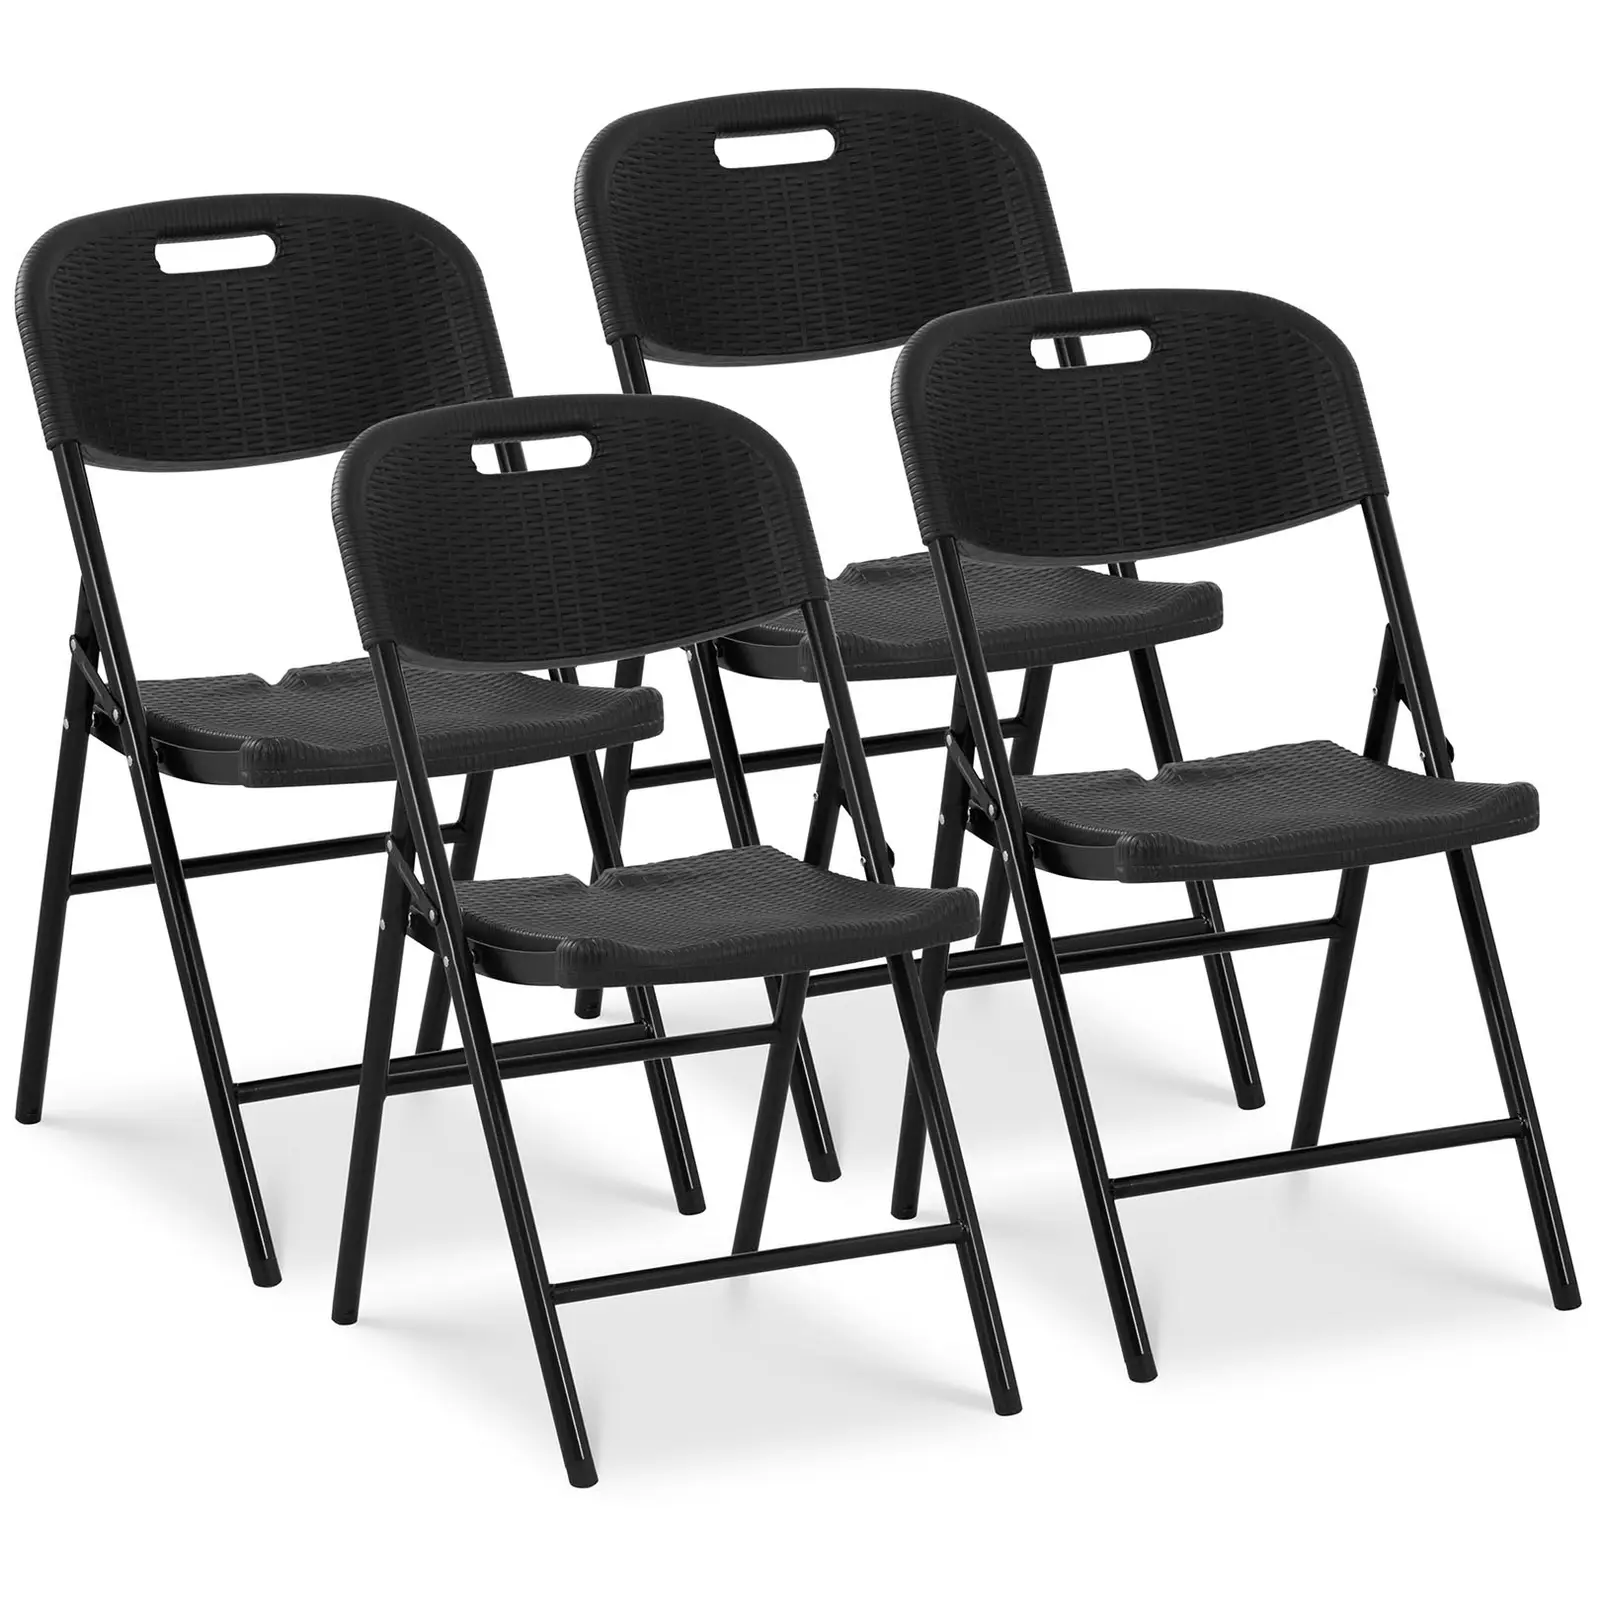 Πτυσσόμενες καρέκλες - σετ από 4 - Royal Catering - 180 kg - επιφάνεια καθίσματος: 52 x 36 cm - μαύρο